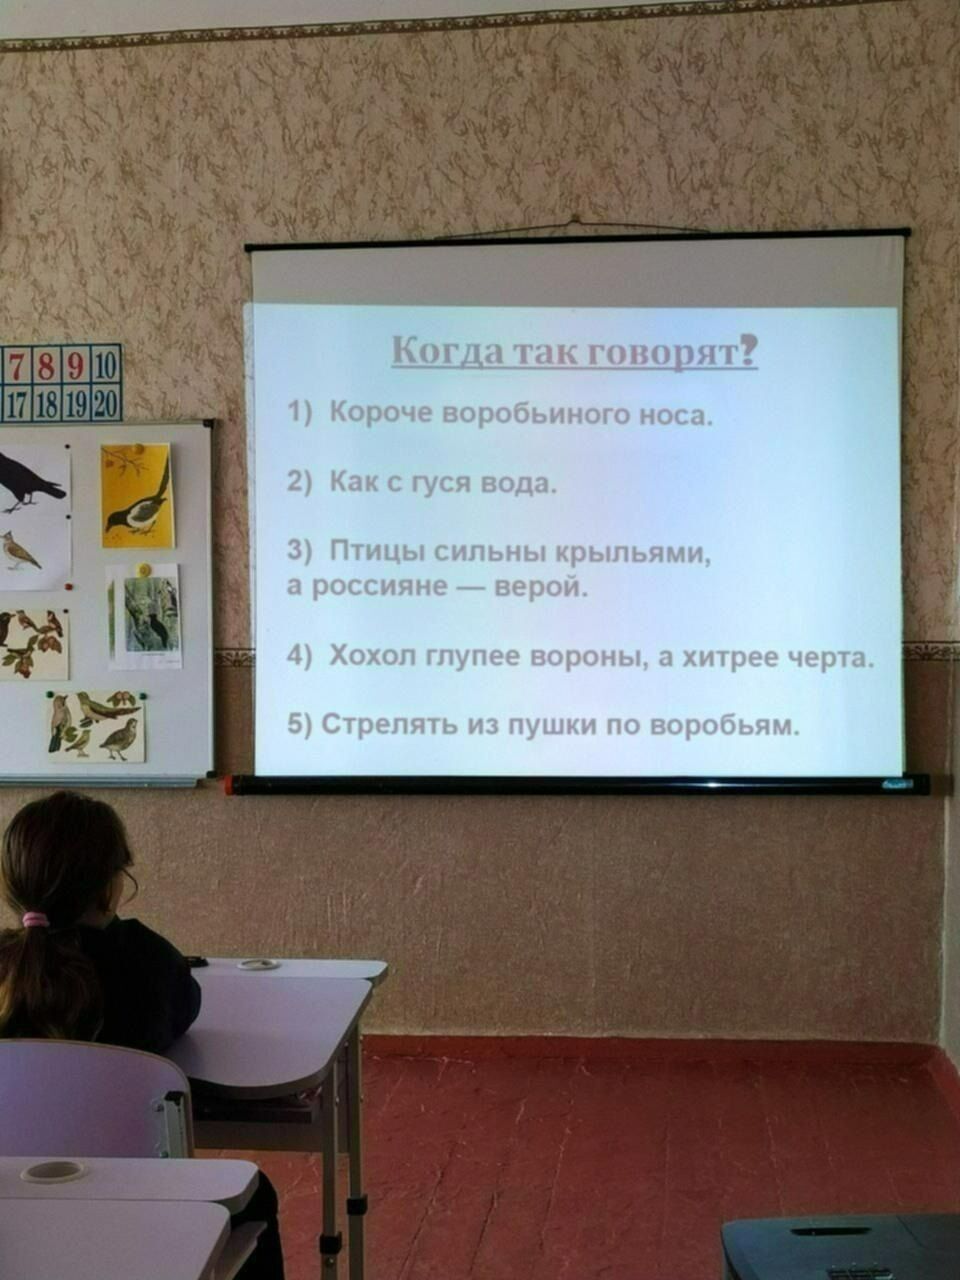 Назвали украинцев "хохлами" и сравнили с воронами: в школе на Запорожье устроили "промывание мозгов" детям. Фото